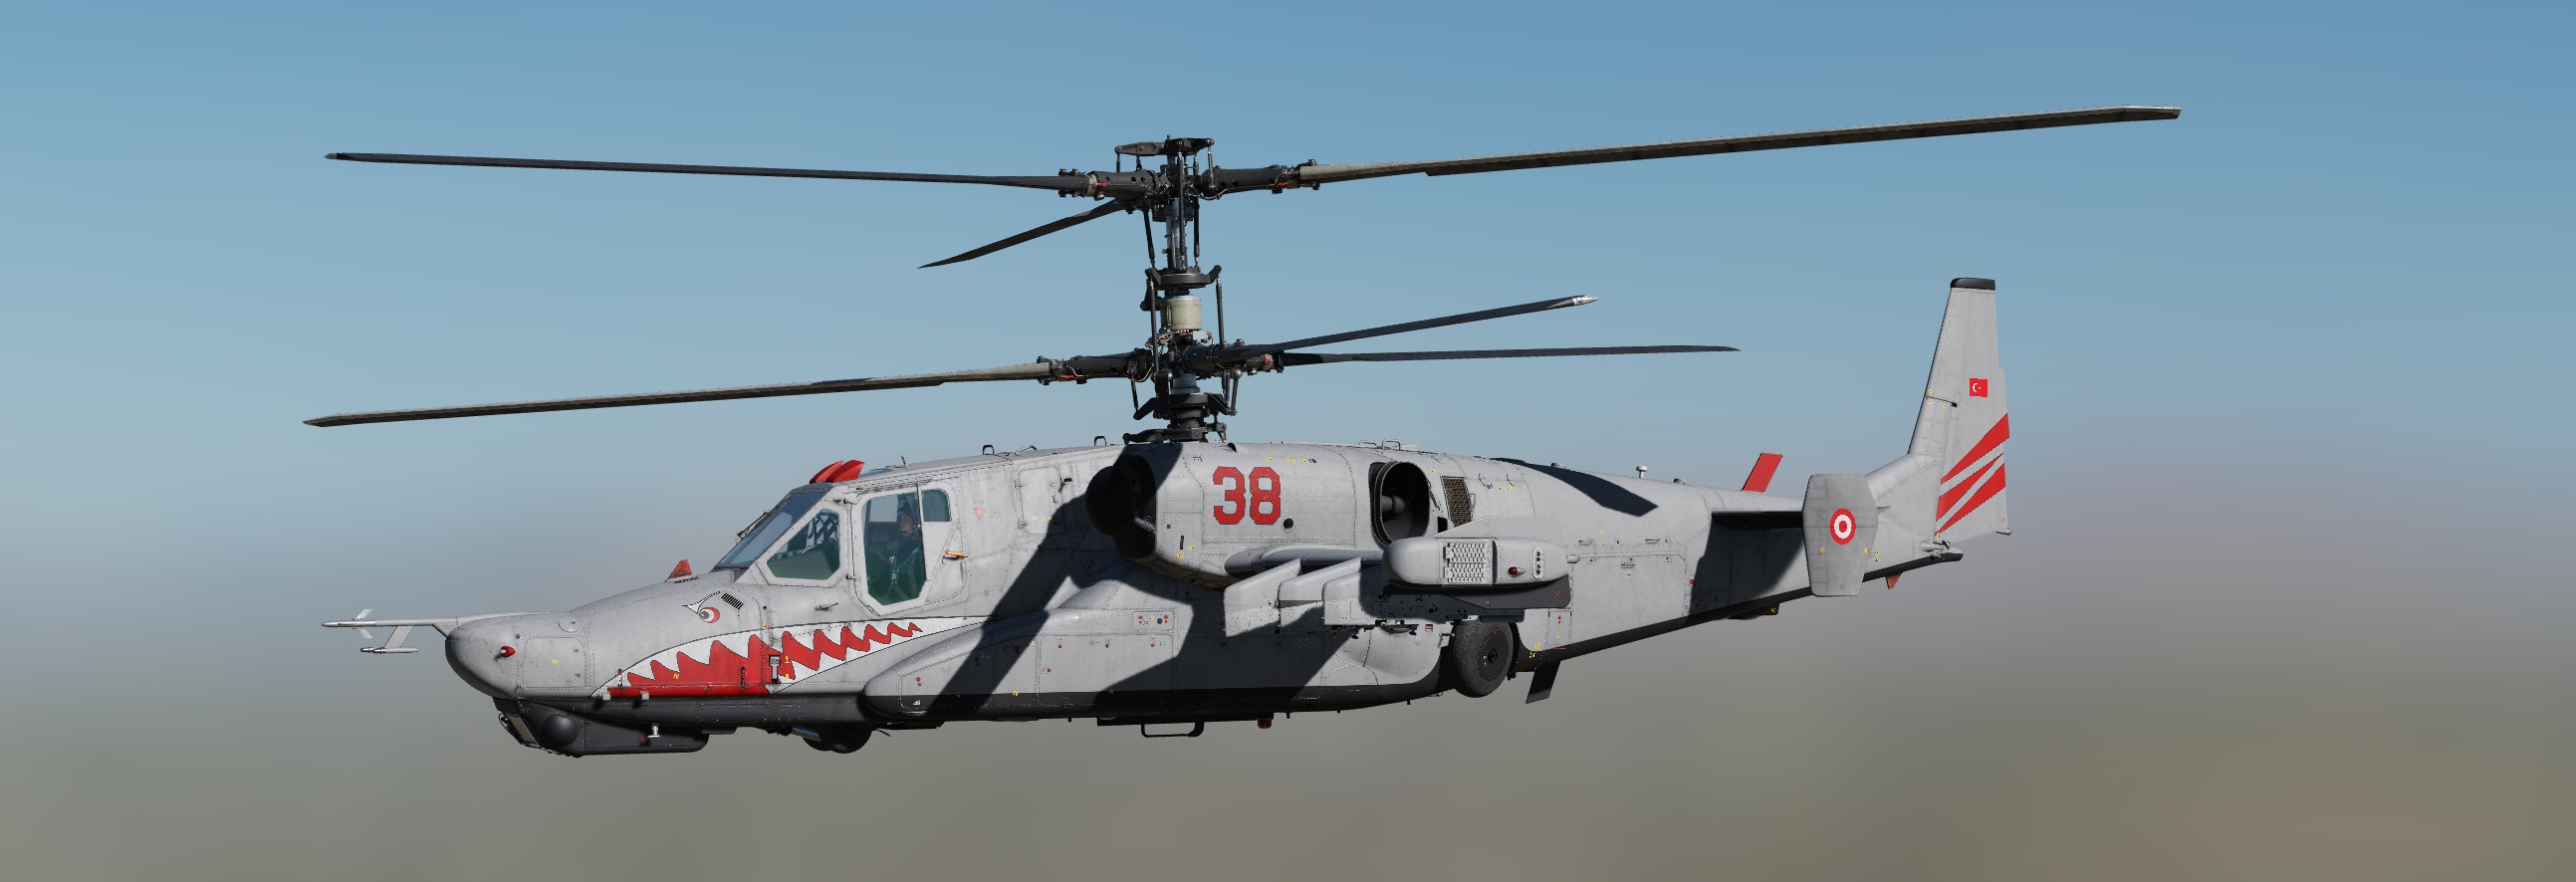 KA-50-3 Turkish Army_High resolution